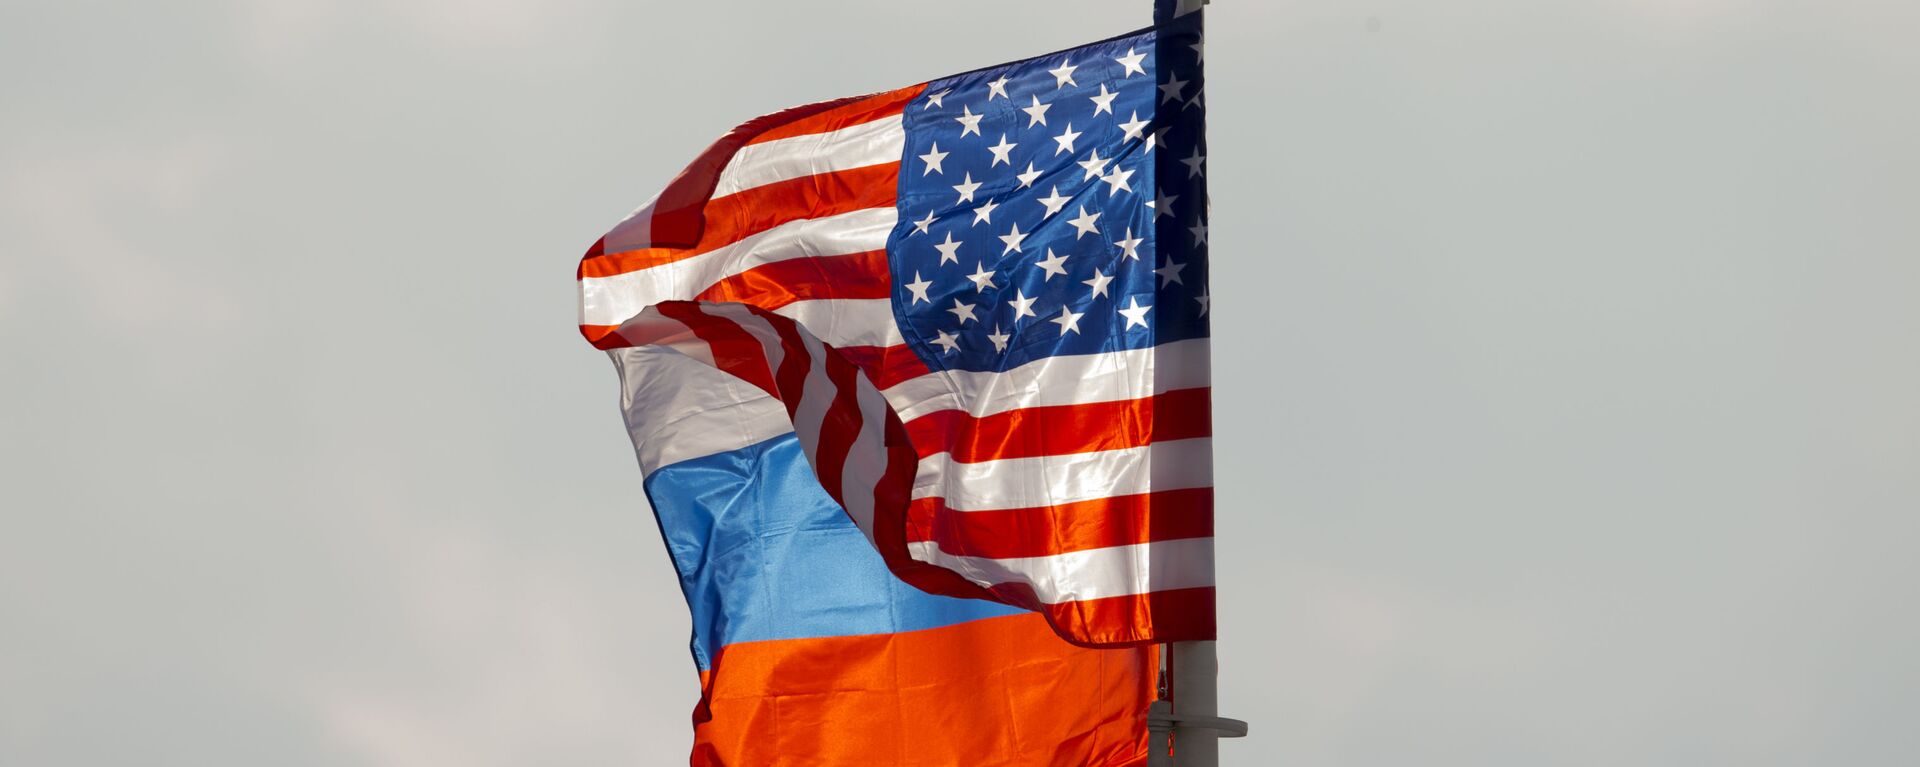 Флаги России и США - Sputnik Грузия, 1920, 27.11.2021